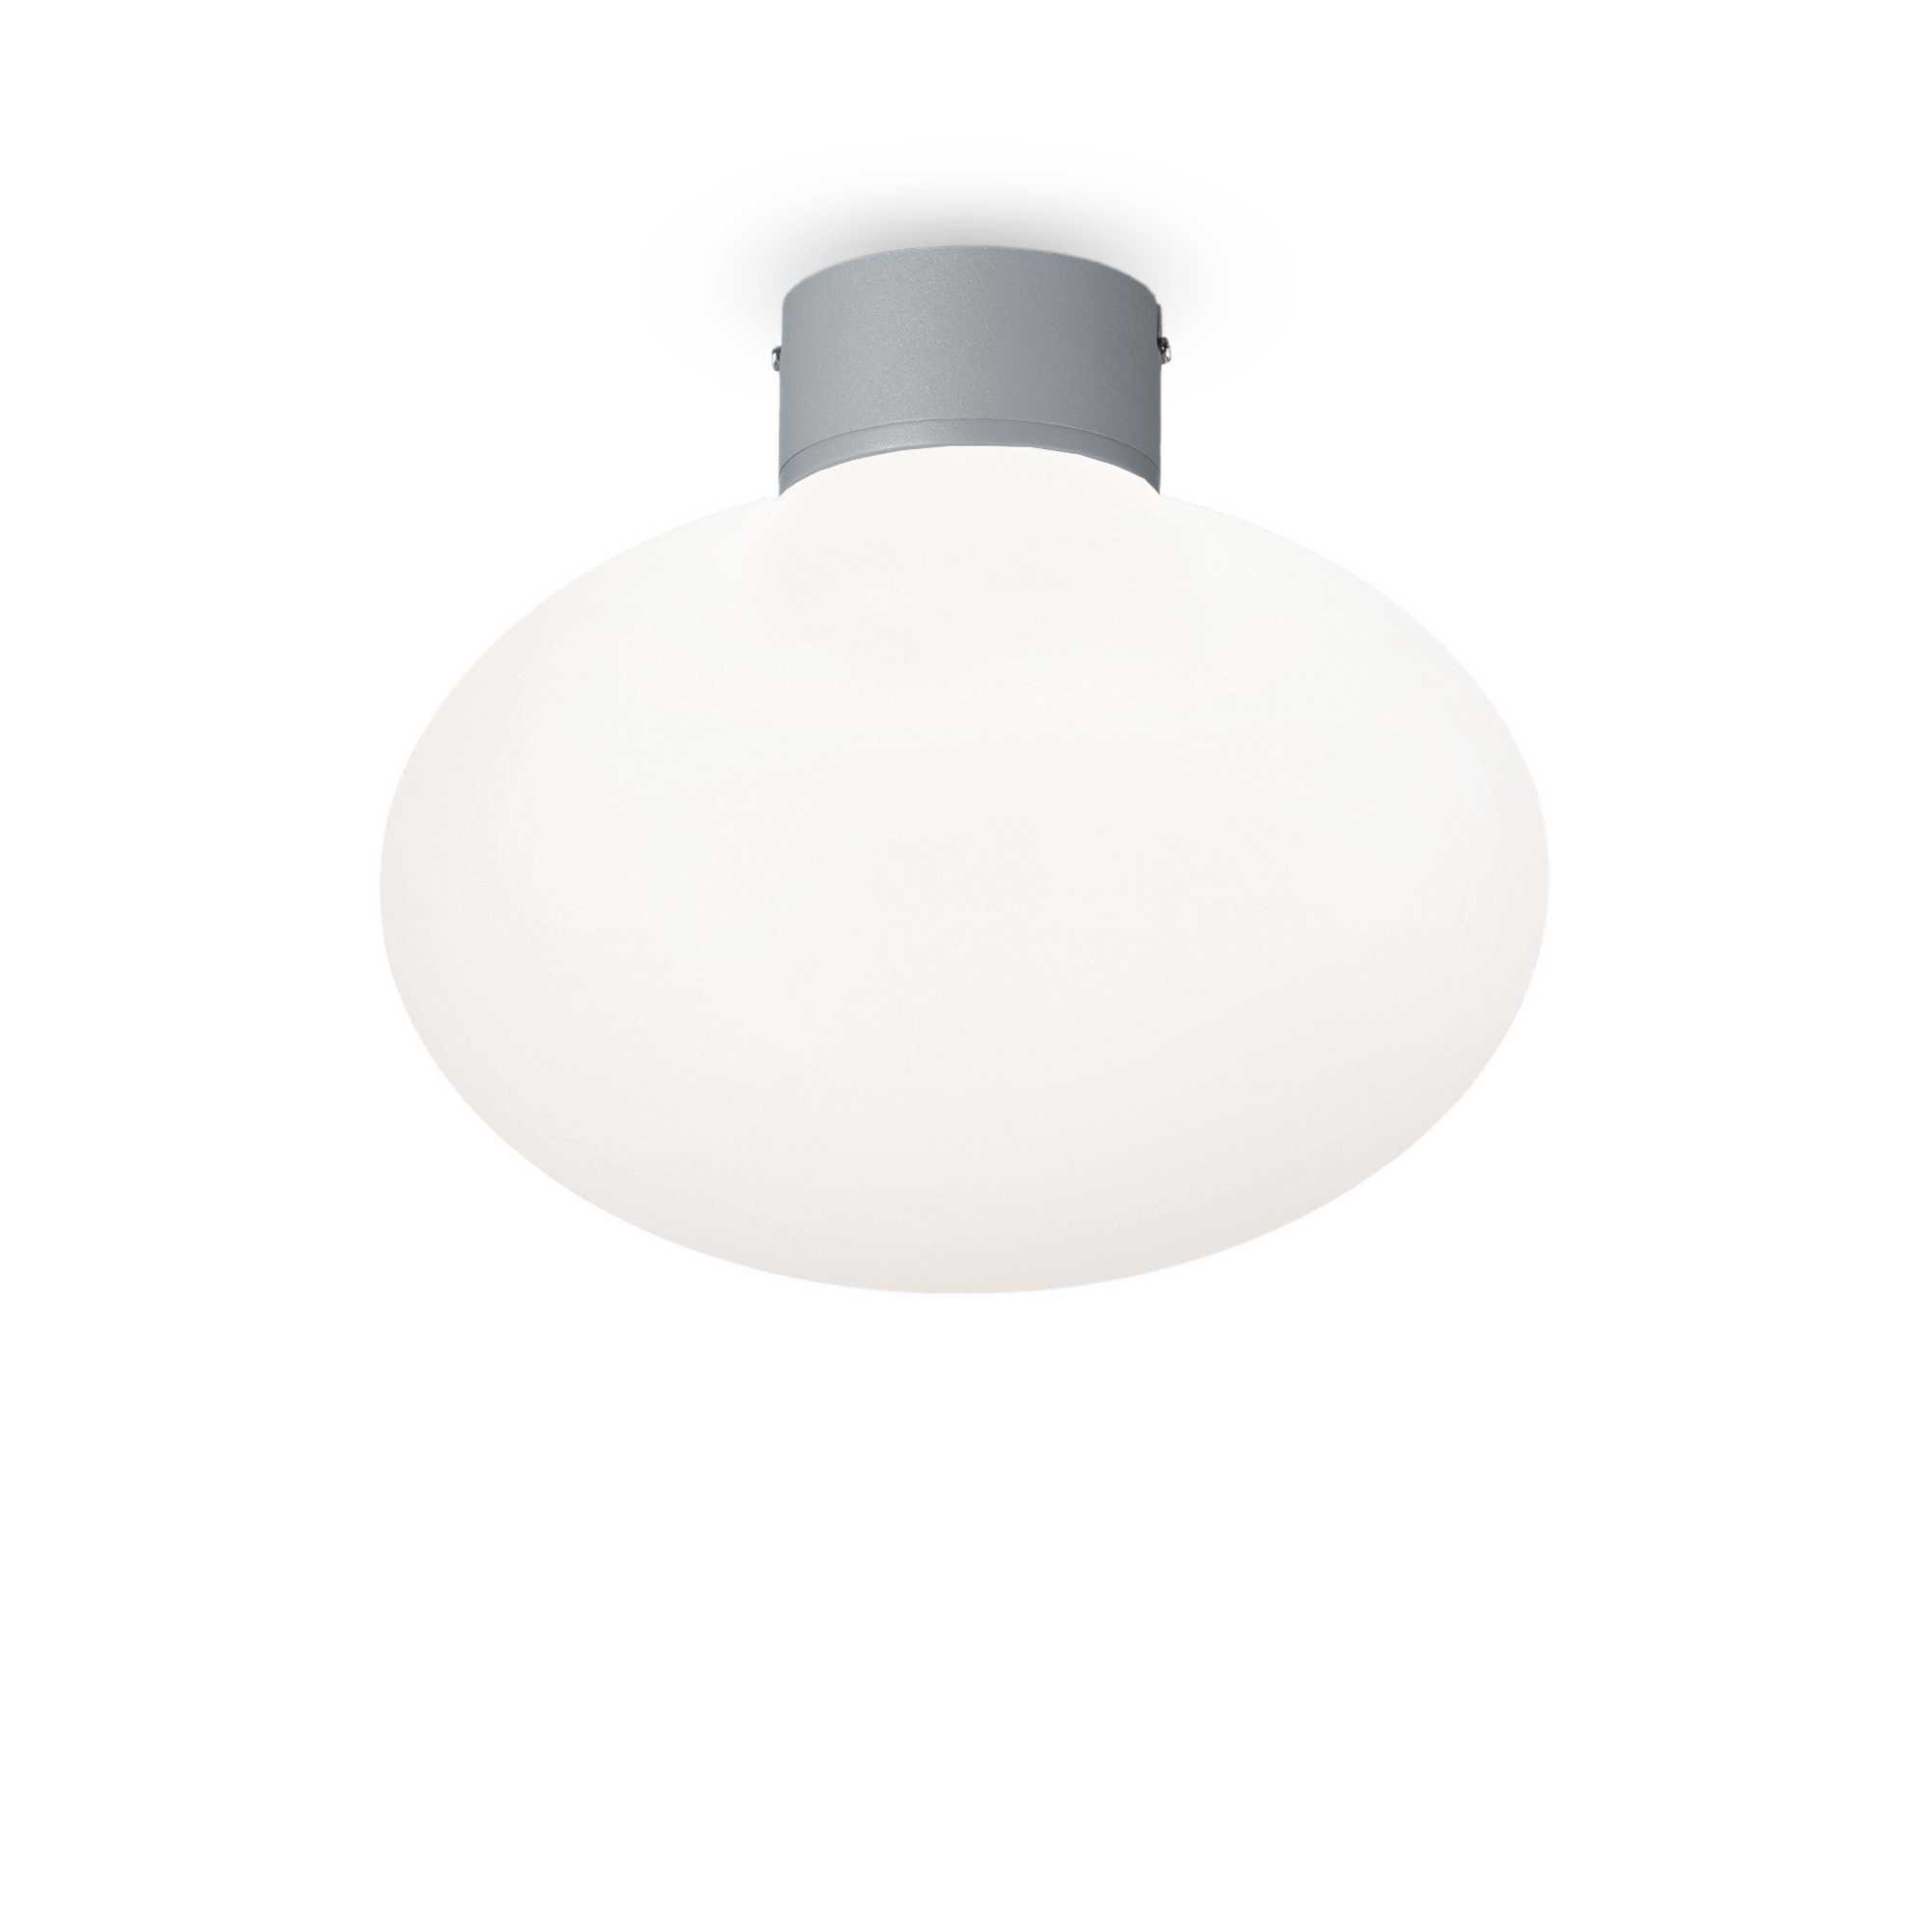 AD hotelska oprema Vanjska stropna lampa Clio mpl1- Sive boje slika proizvoda